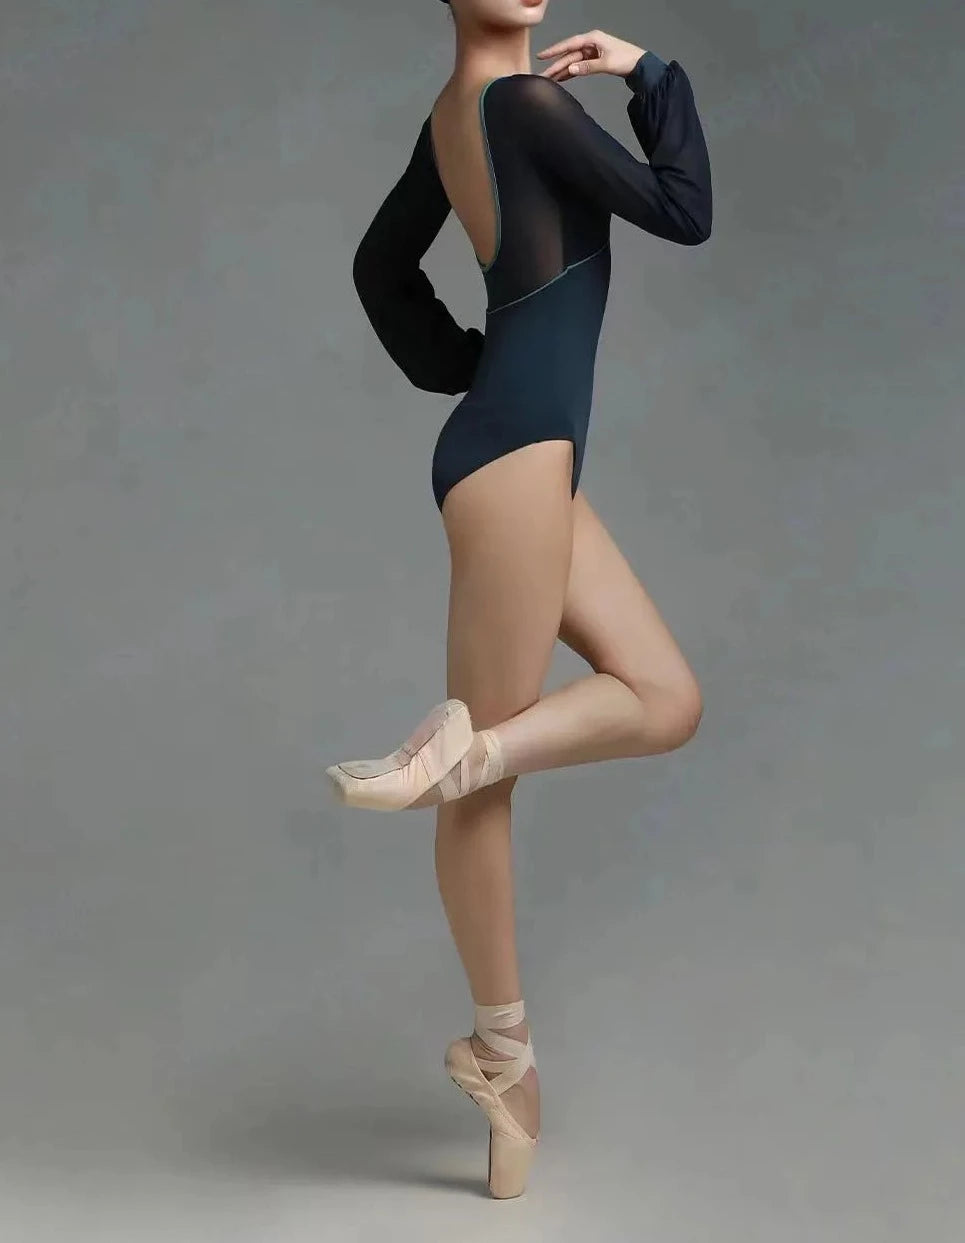 dançarina de balé vestindo uma malha preta de manga comprida